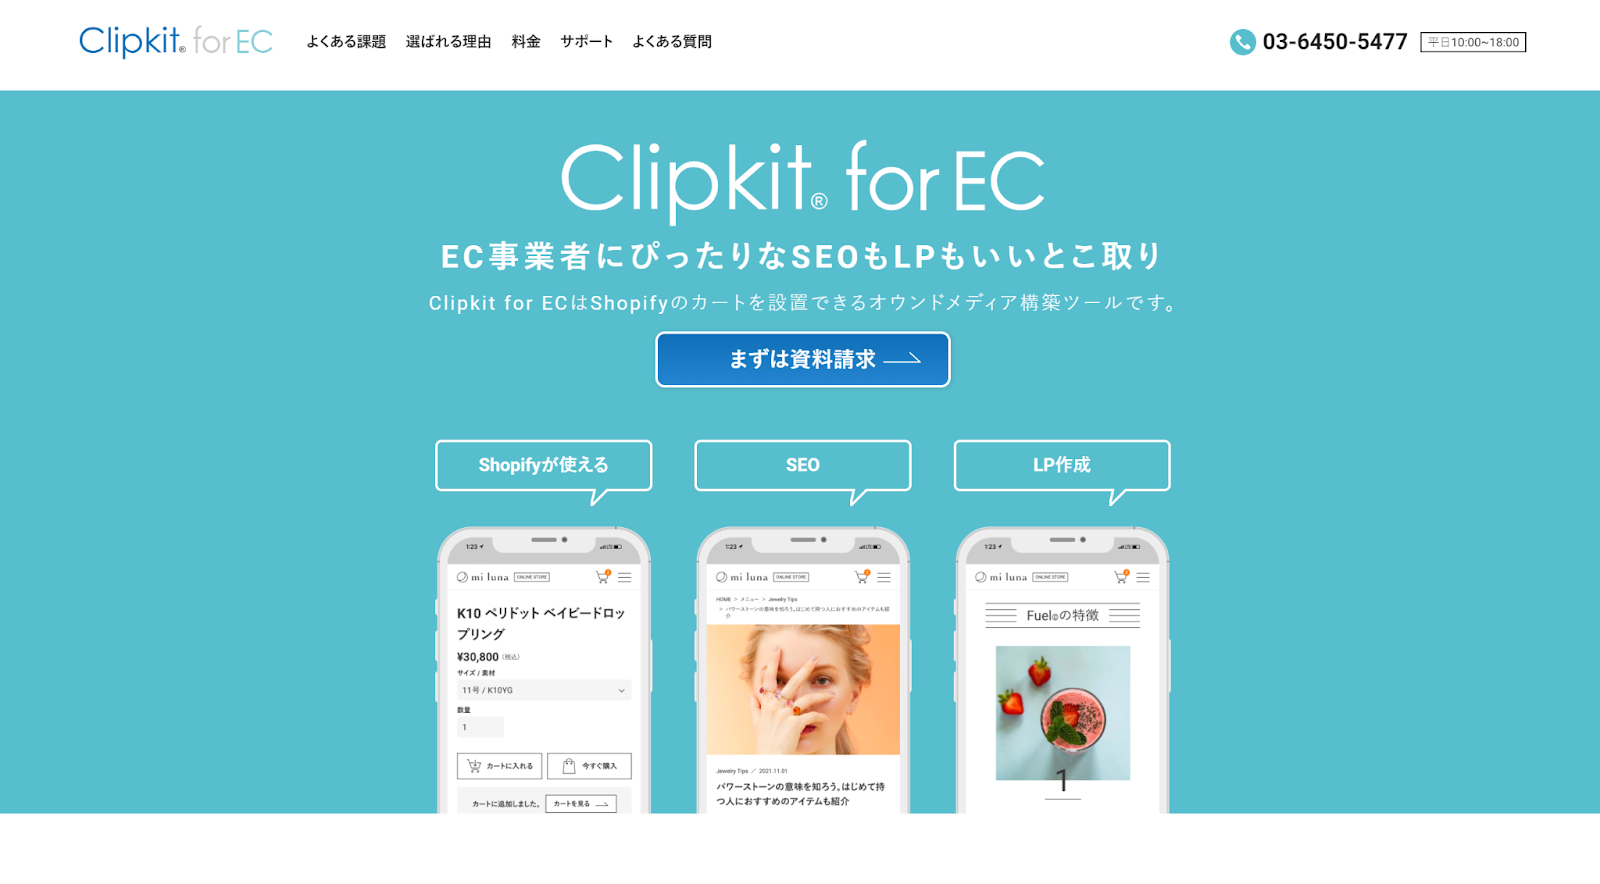 Clipkit for EC